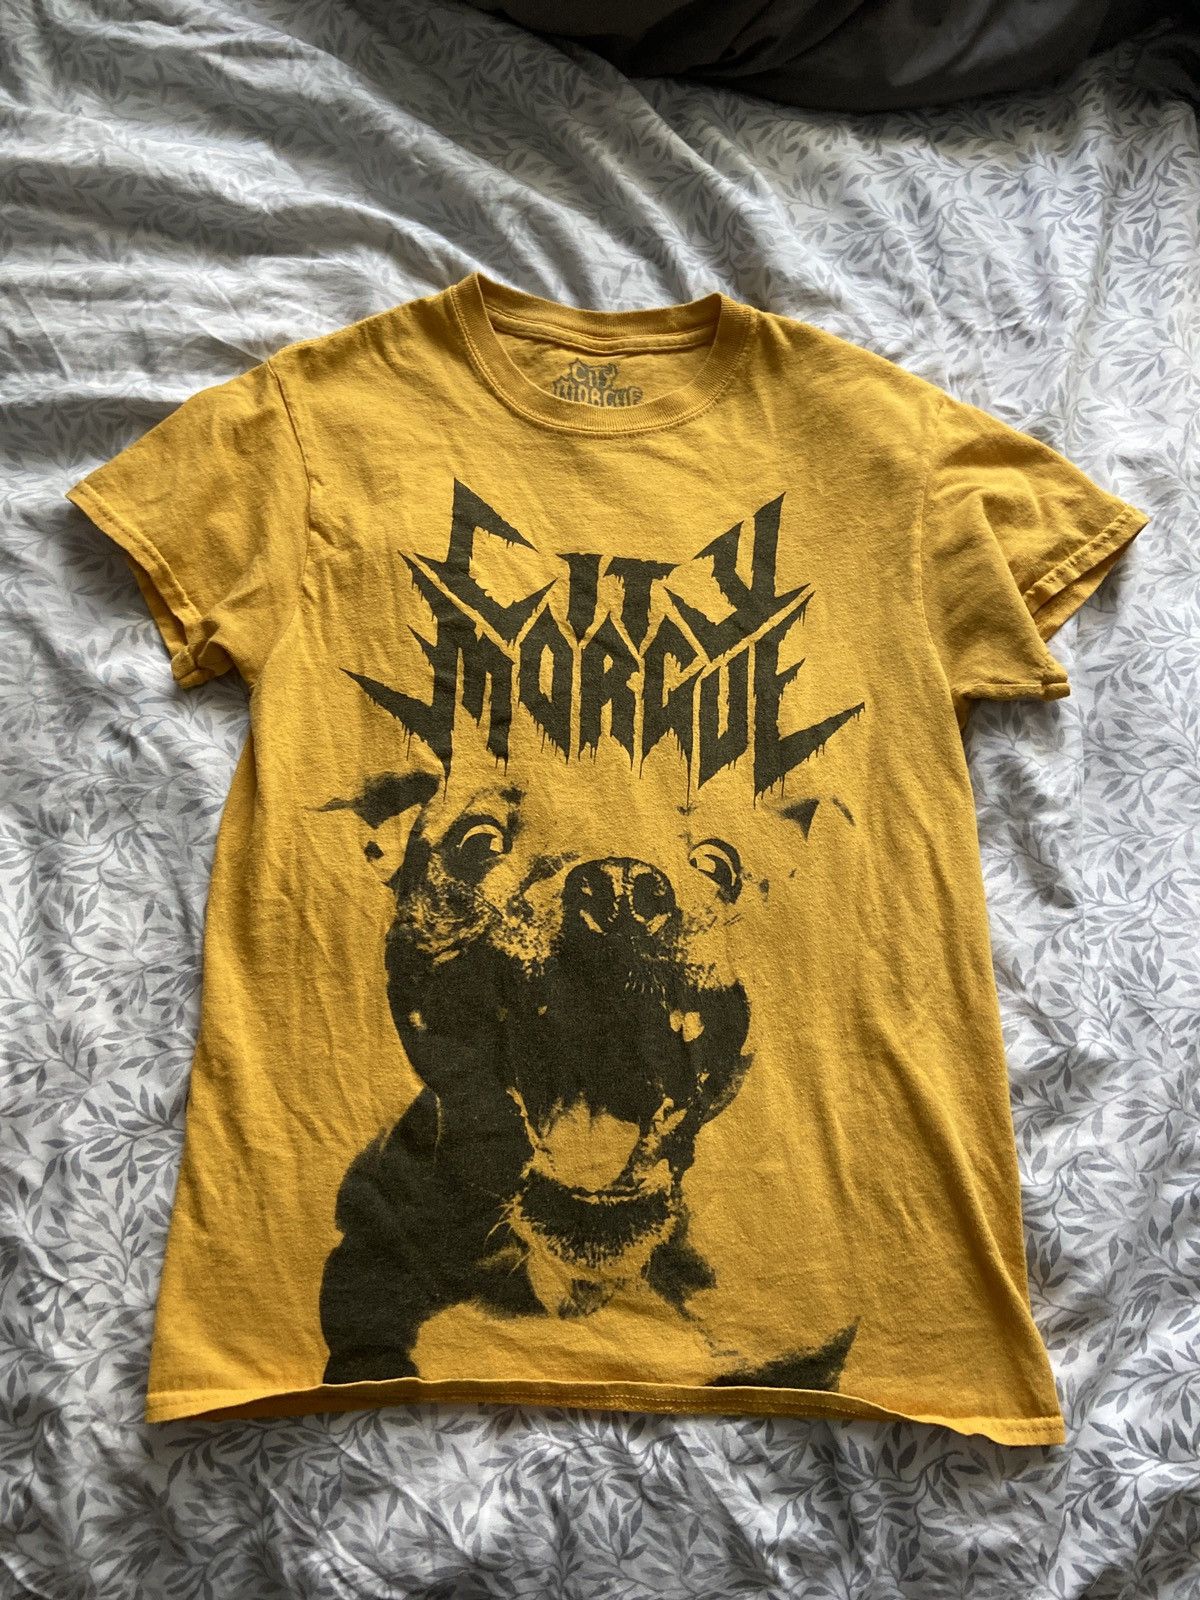 City Morgue City Morgue Toxic Boogaloo shirt merch Size US S / EU 44-46 / 1 - 1 Preview